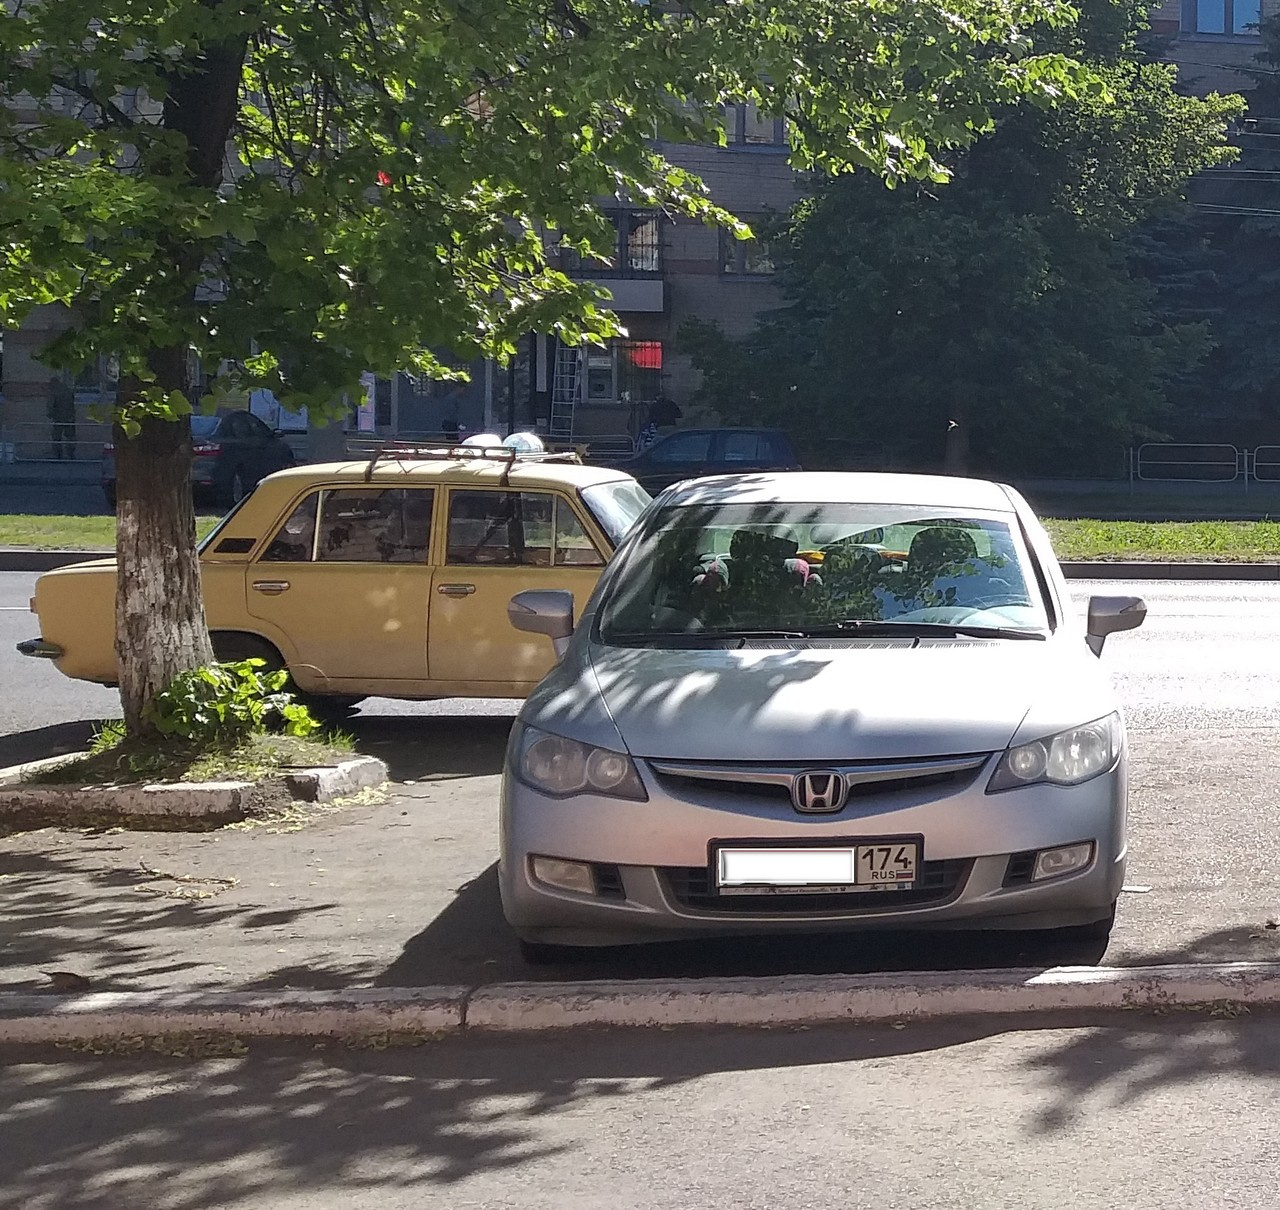 А вот случай почти трагикомический: <br>— Парковка у магазина «Пятёрочка» на Гагарина, 58, раннее утро, кругом никого, — пишет автор снимка. — Чем руководствовался водитель «копейки», блокируя единственную машину на парковке, остается догадываться<br>